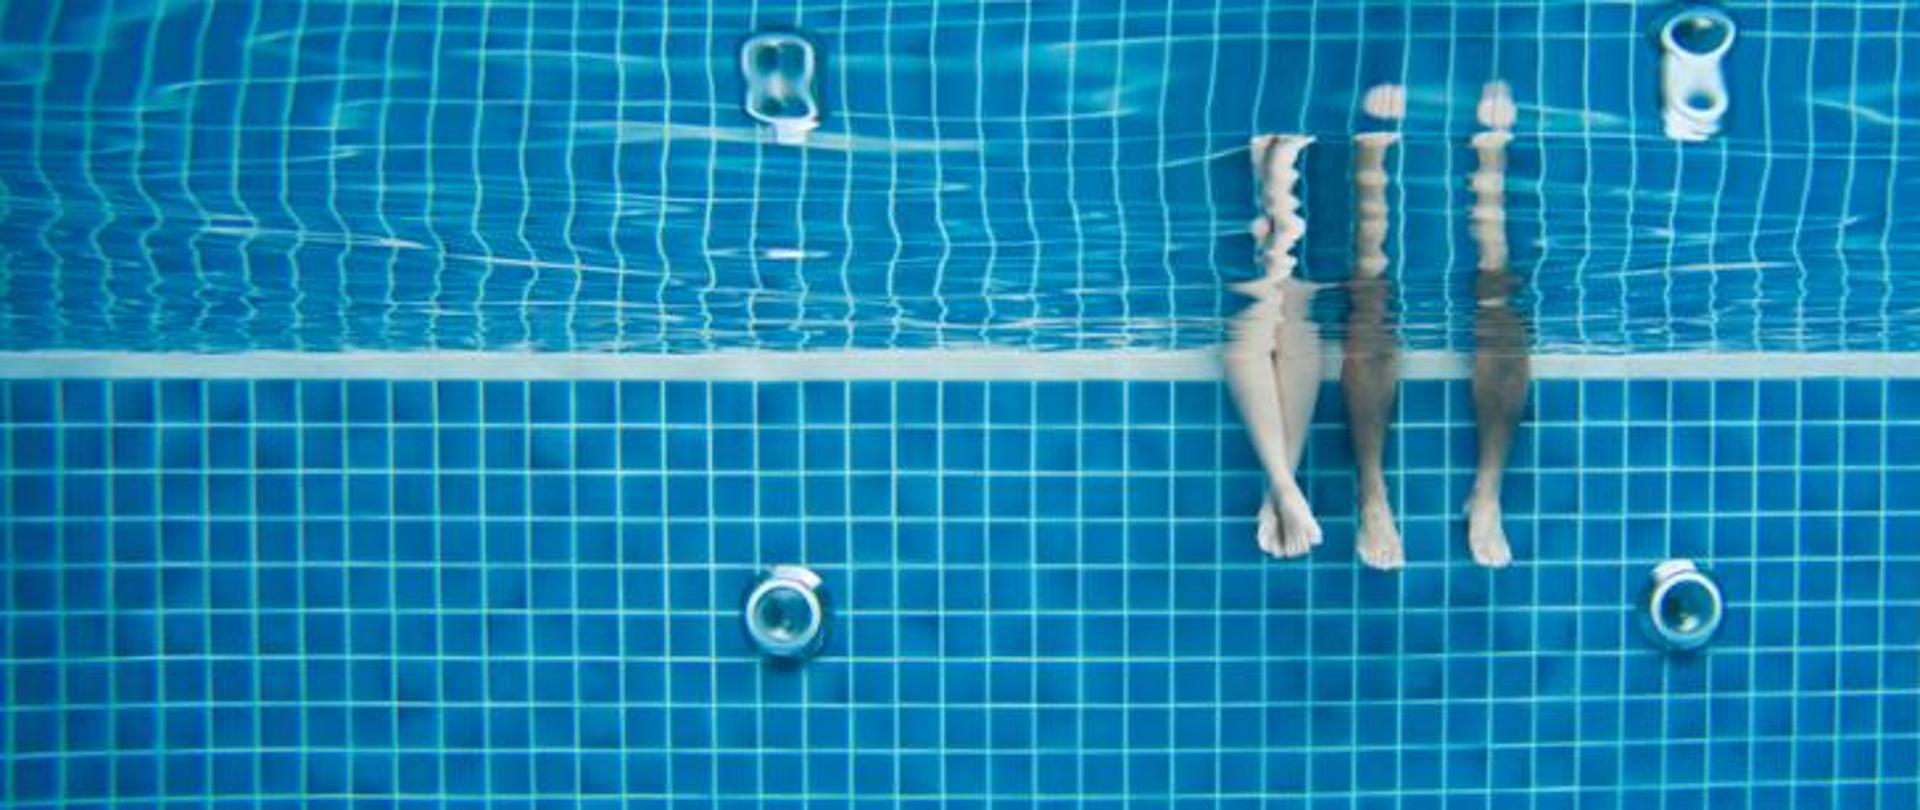 Zdjęcie wykonane pod wodą na basenie, widoczne są nogi kobiety i mężczyzny pod wodą